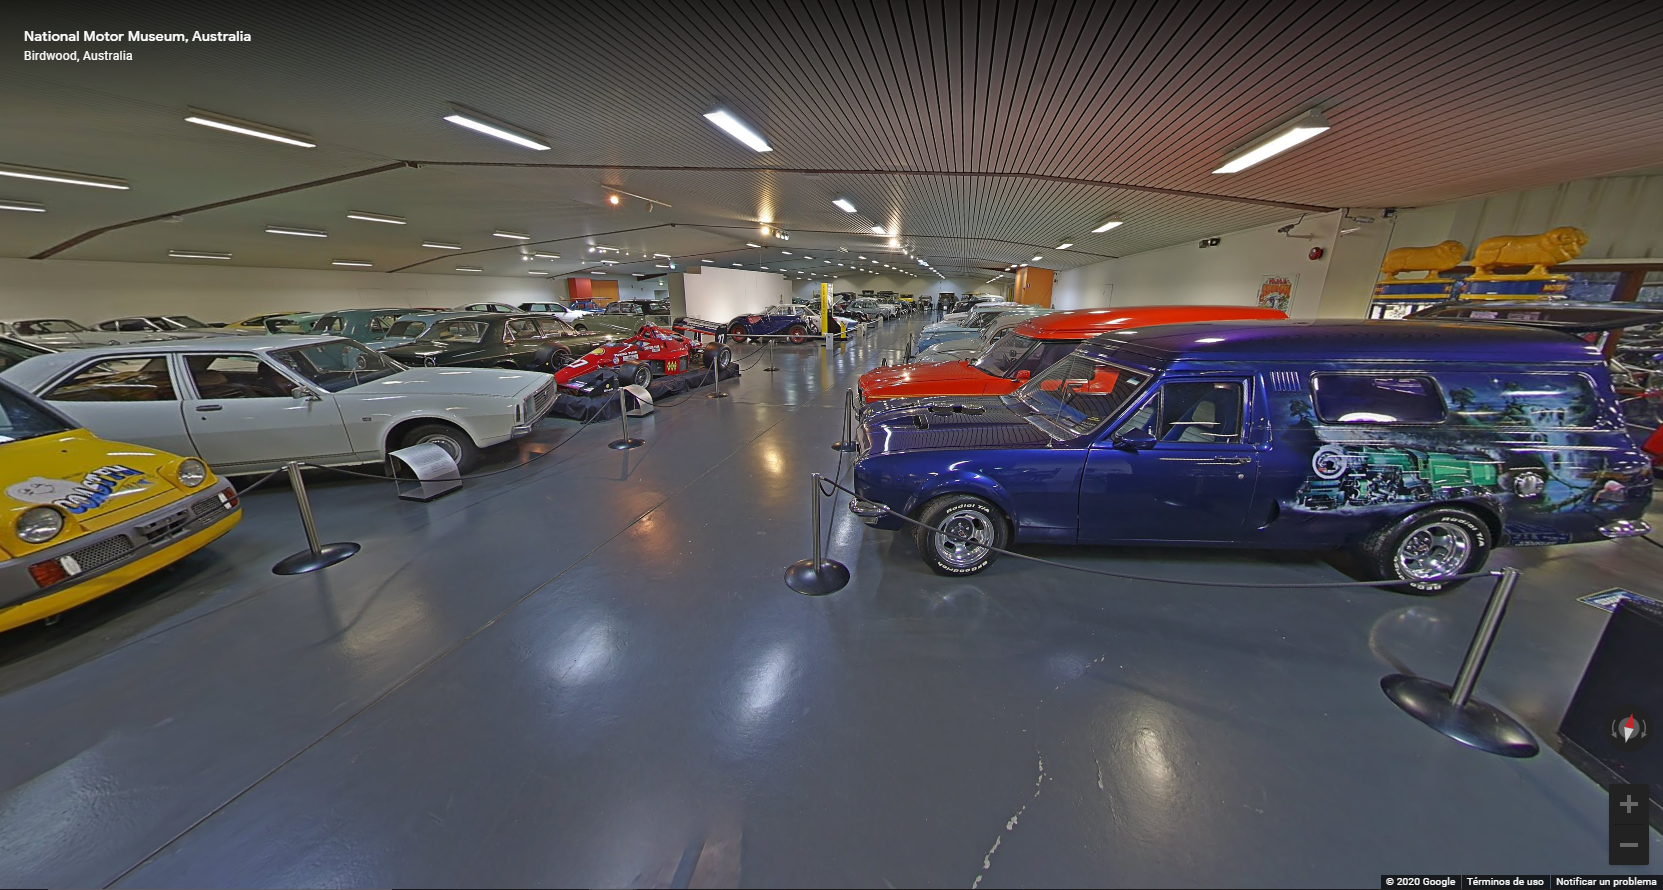 Hoy visitamos el National Motor Museum de Australia